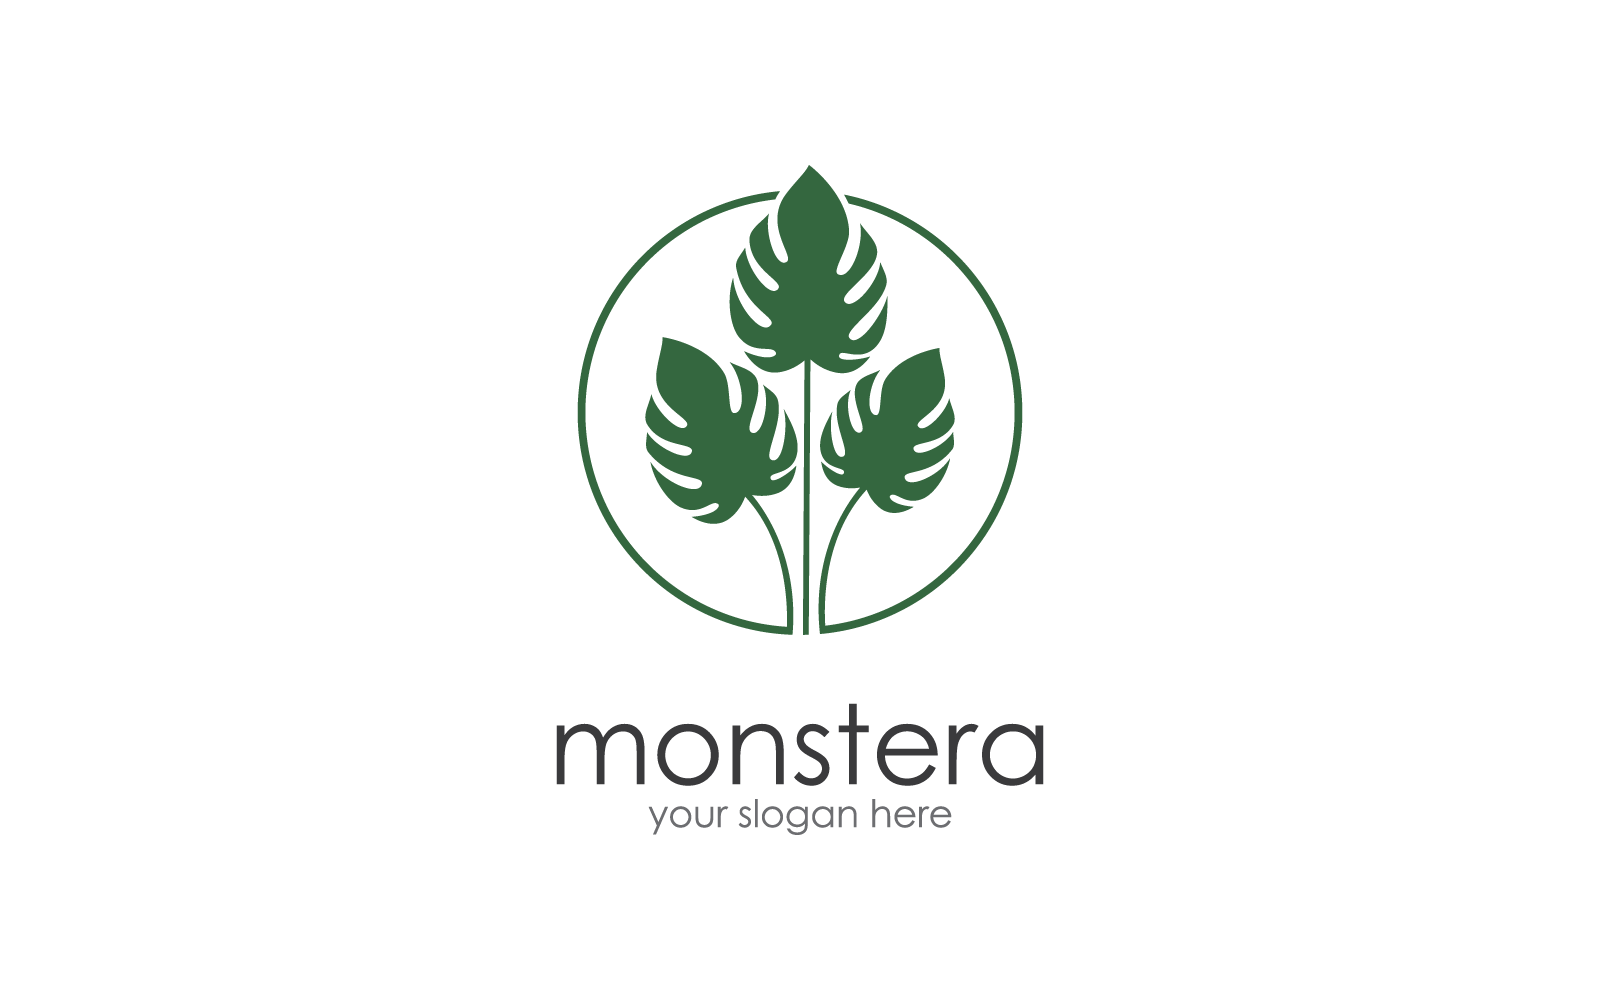 Monstera leaf vector flat design logo illustration